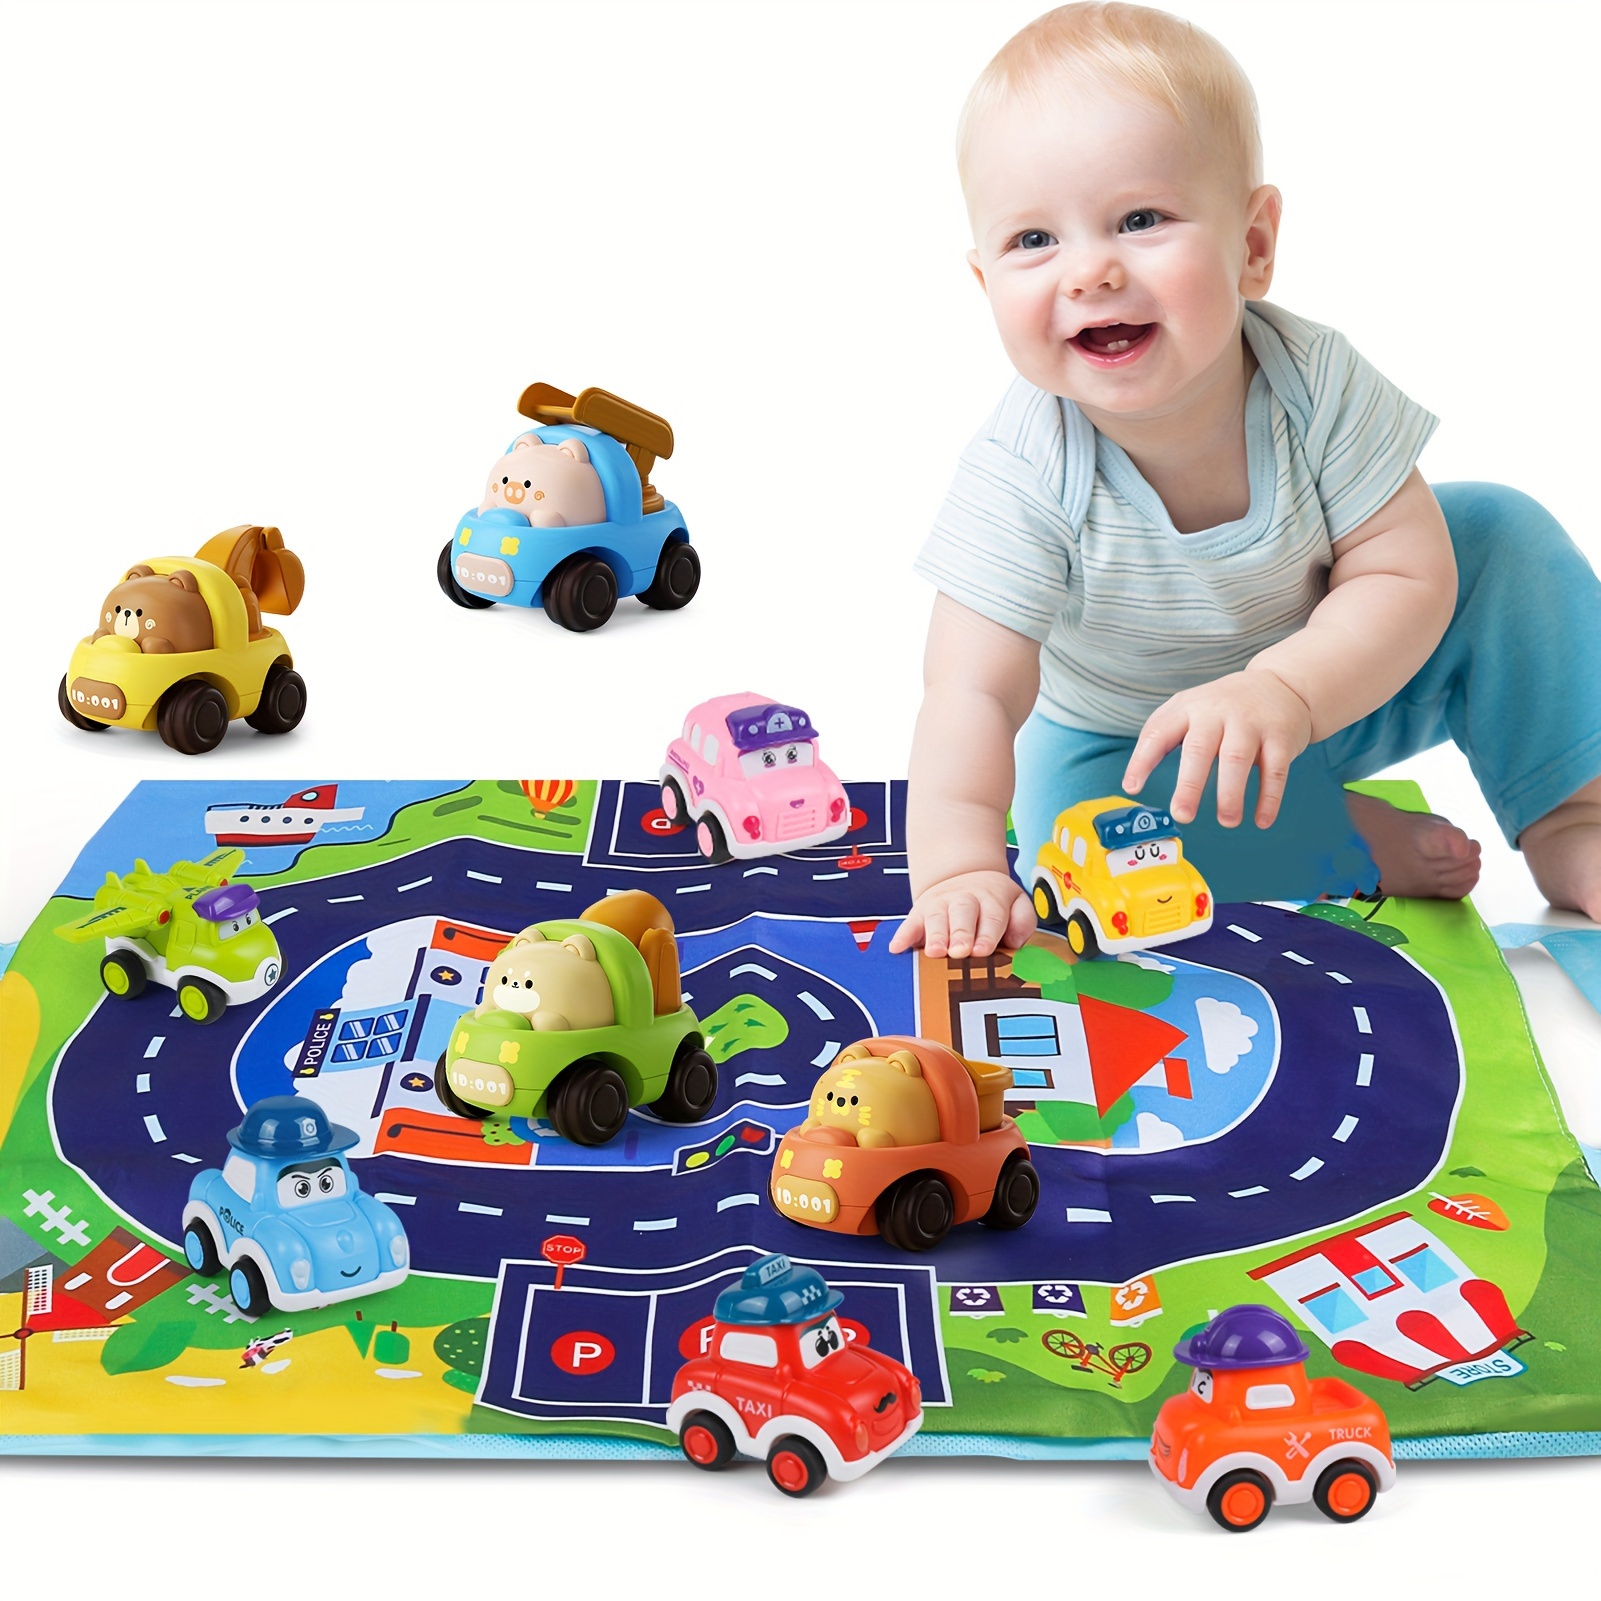 Babyschale Spielzeug - Kostenlose Rückgabe Innerhalb Von 90 Tagen - Temu  Germany